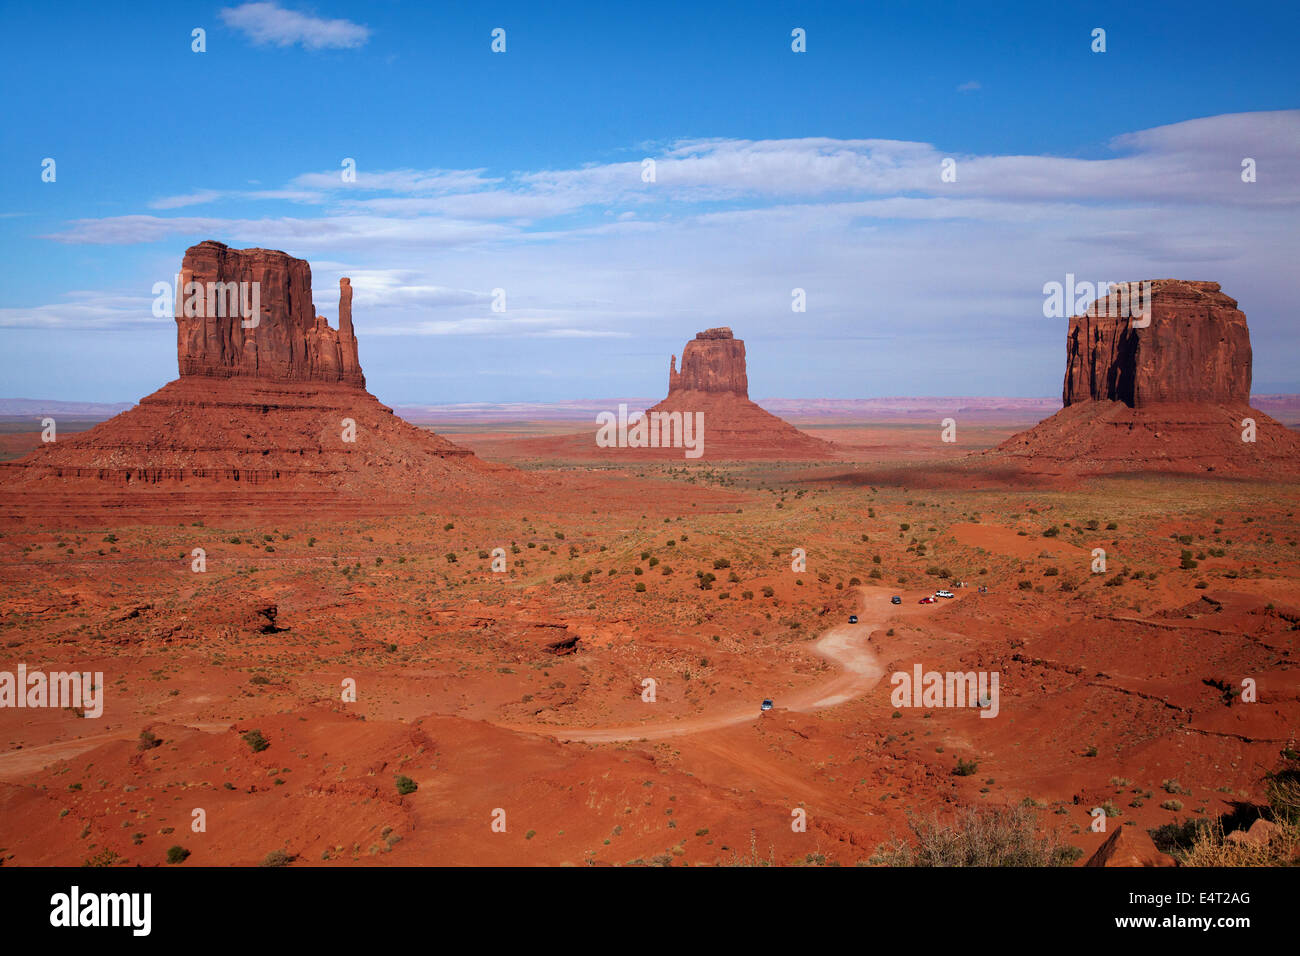 Westen Mitten, Osten Handschuh, Merrick Butte und Valley Scenic Drive, Monument Valley Navajo-Nation, Utah und Arizona Grenze, USA Stockfoto